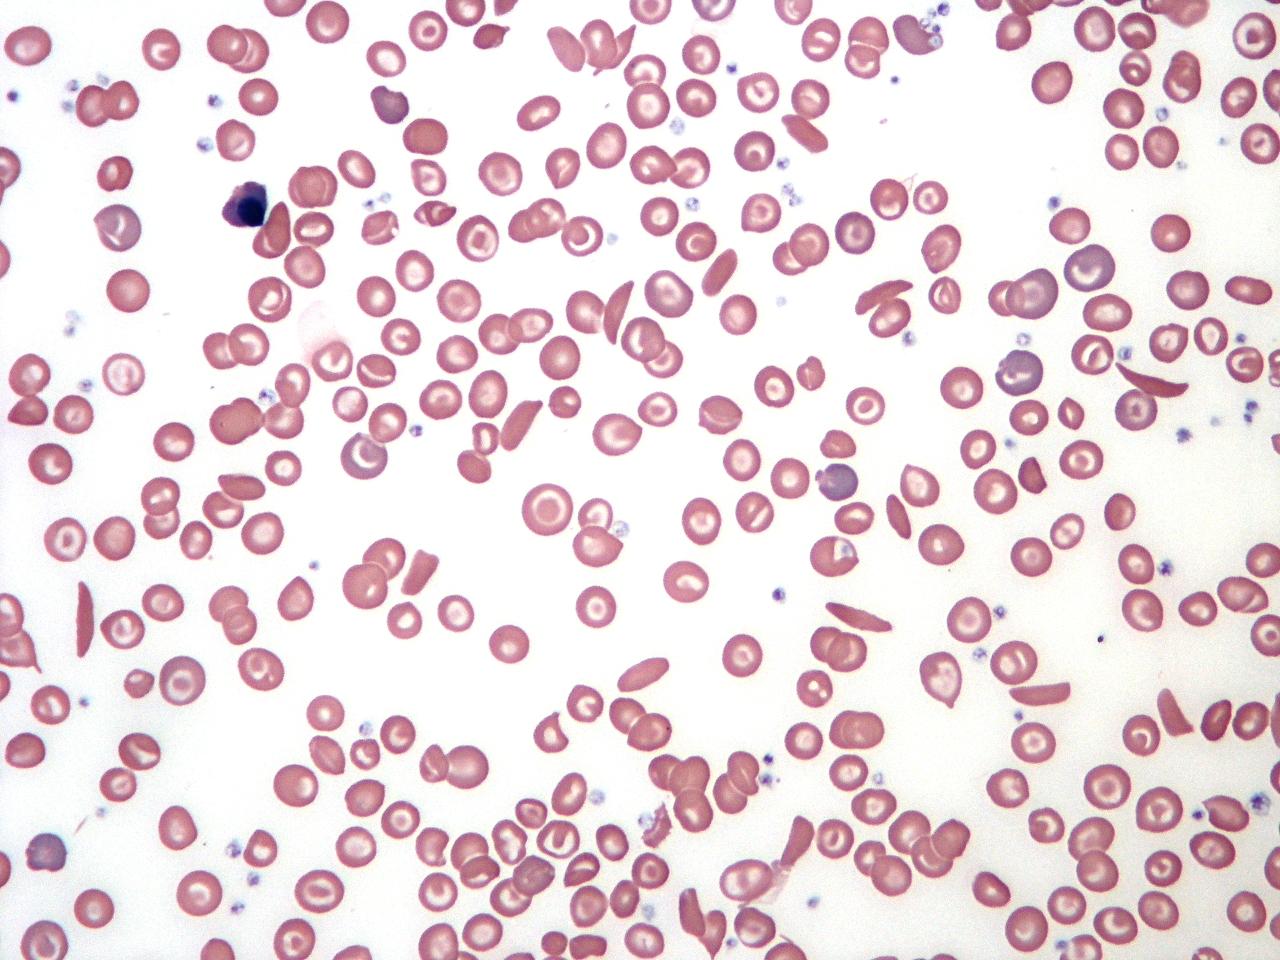 sickled blood cells